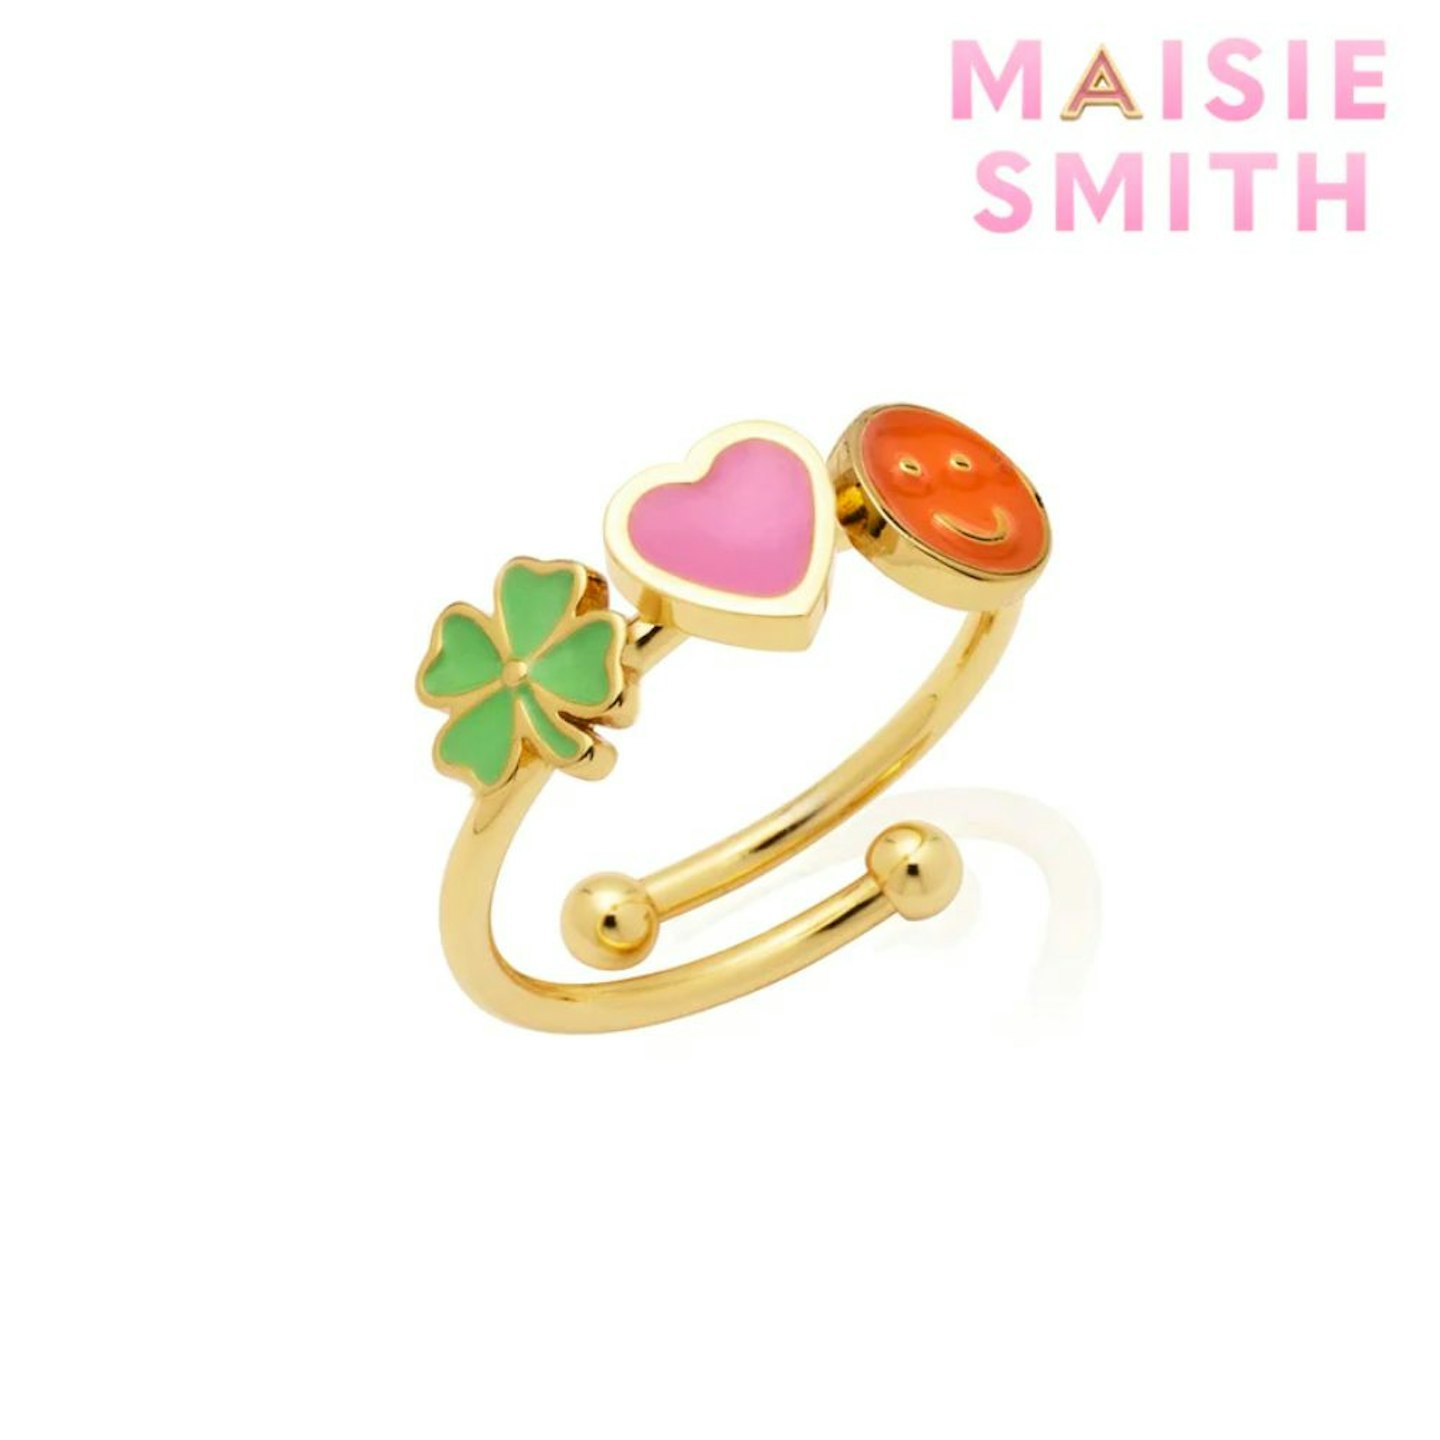 Abbott Lyon X Maisie Smith Custom Enamel Charm Builder Ring